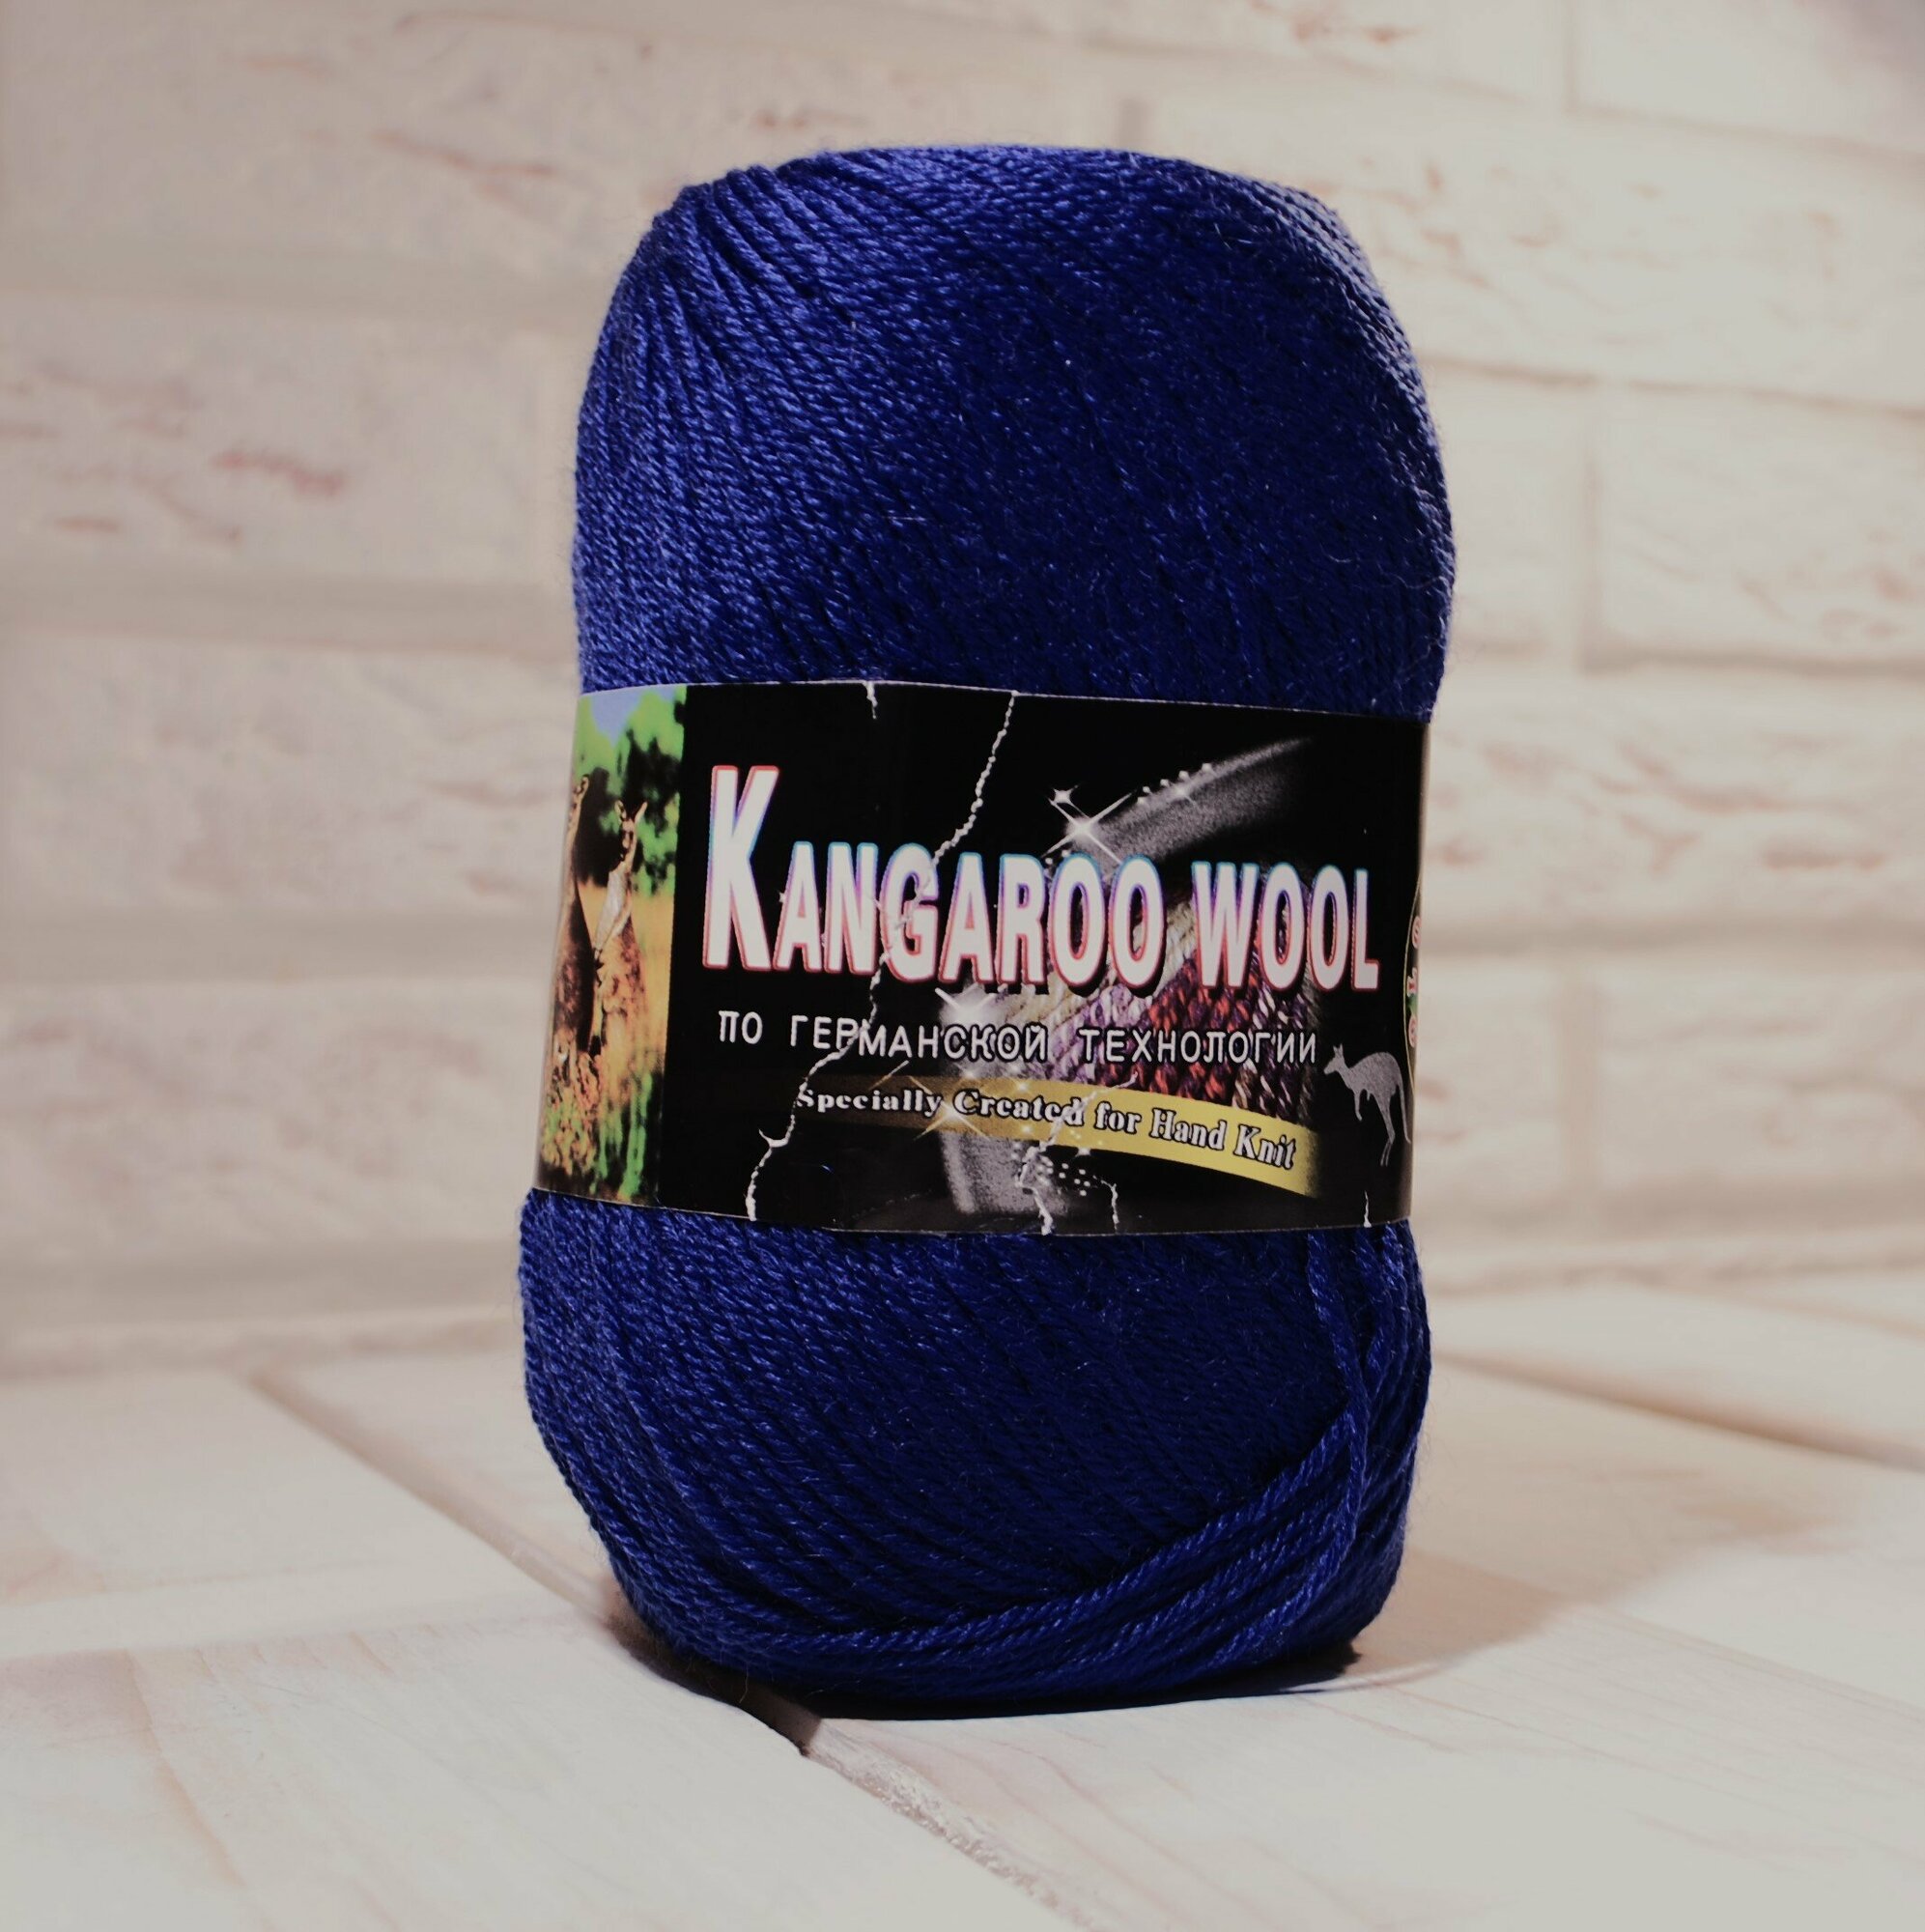 Пряжа COLOR CITY Kangaroo wool, 2313 синий, 100 г, 300 м, 95% шерсть мериноса, 5% шерсть кенгуру, 1 шт